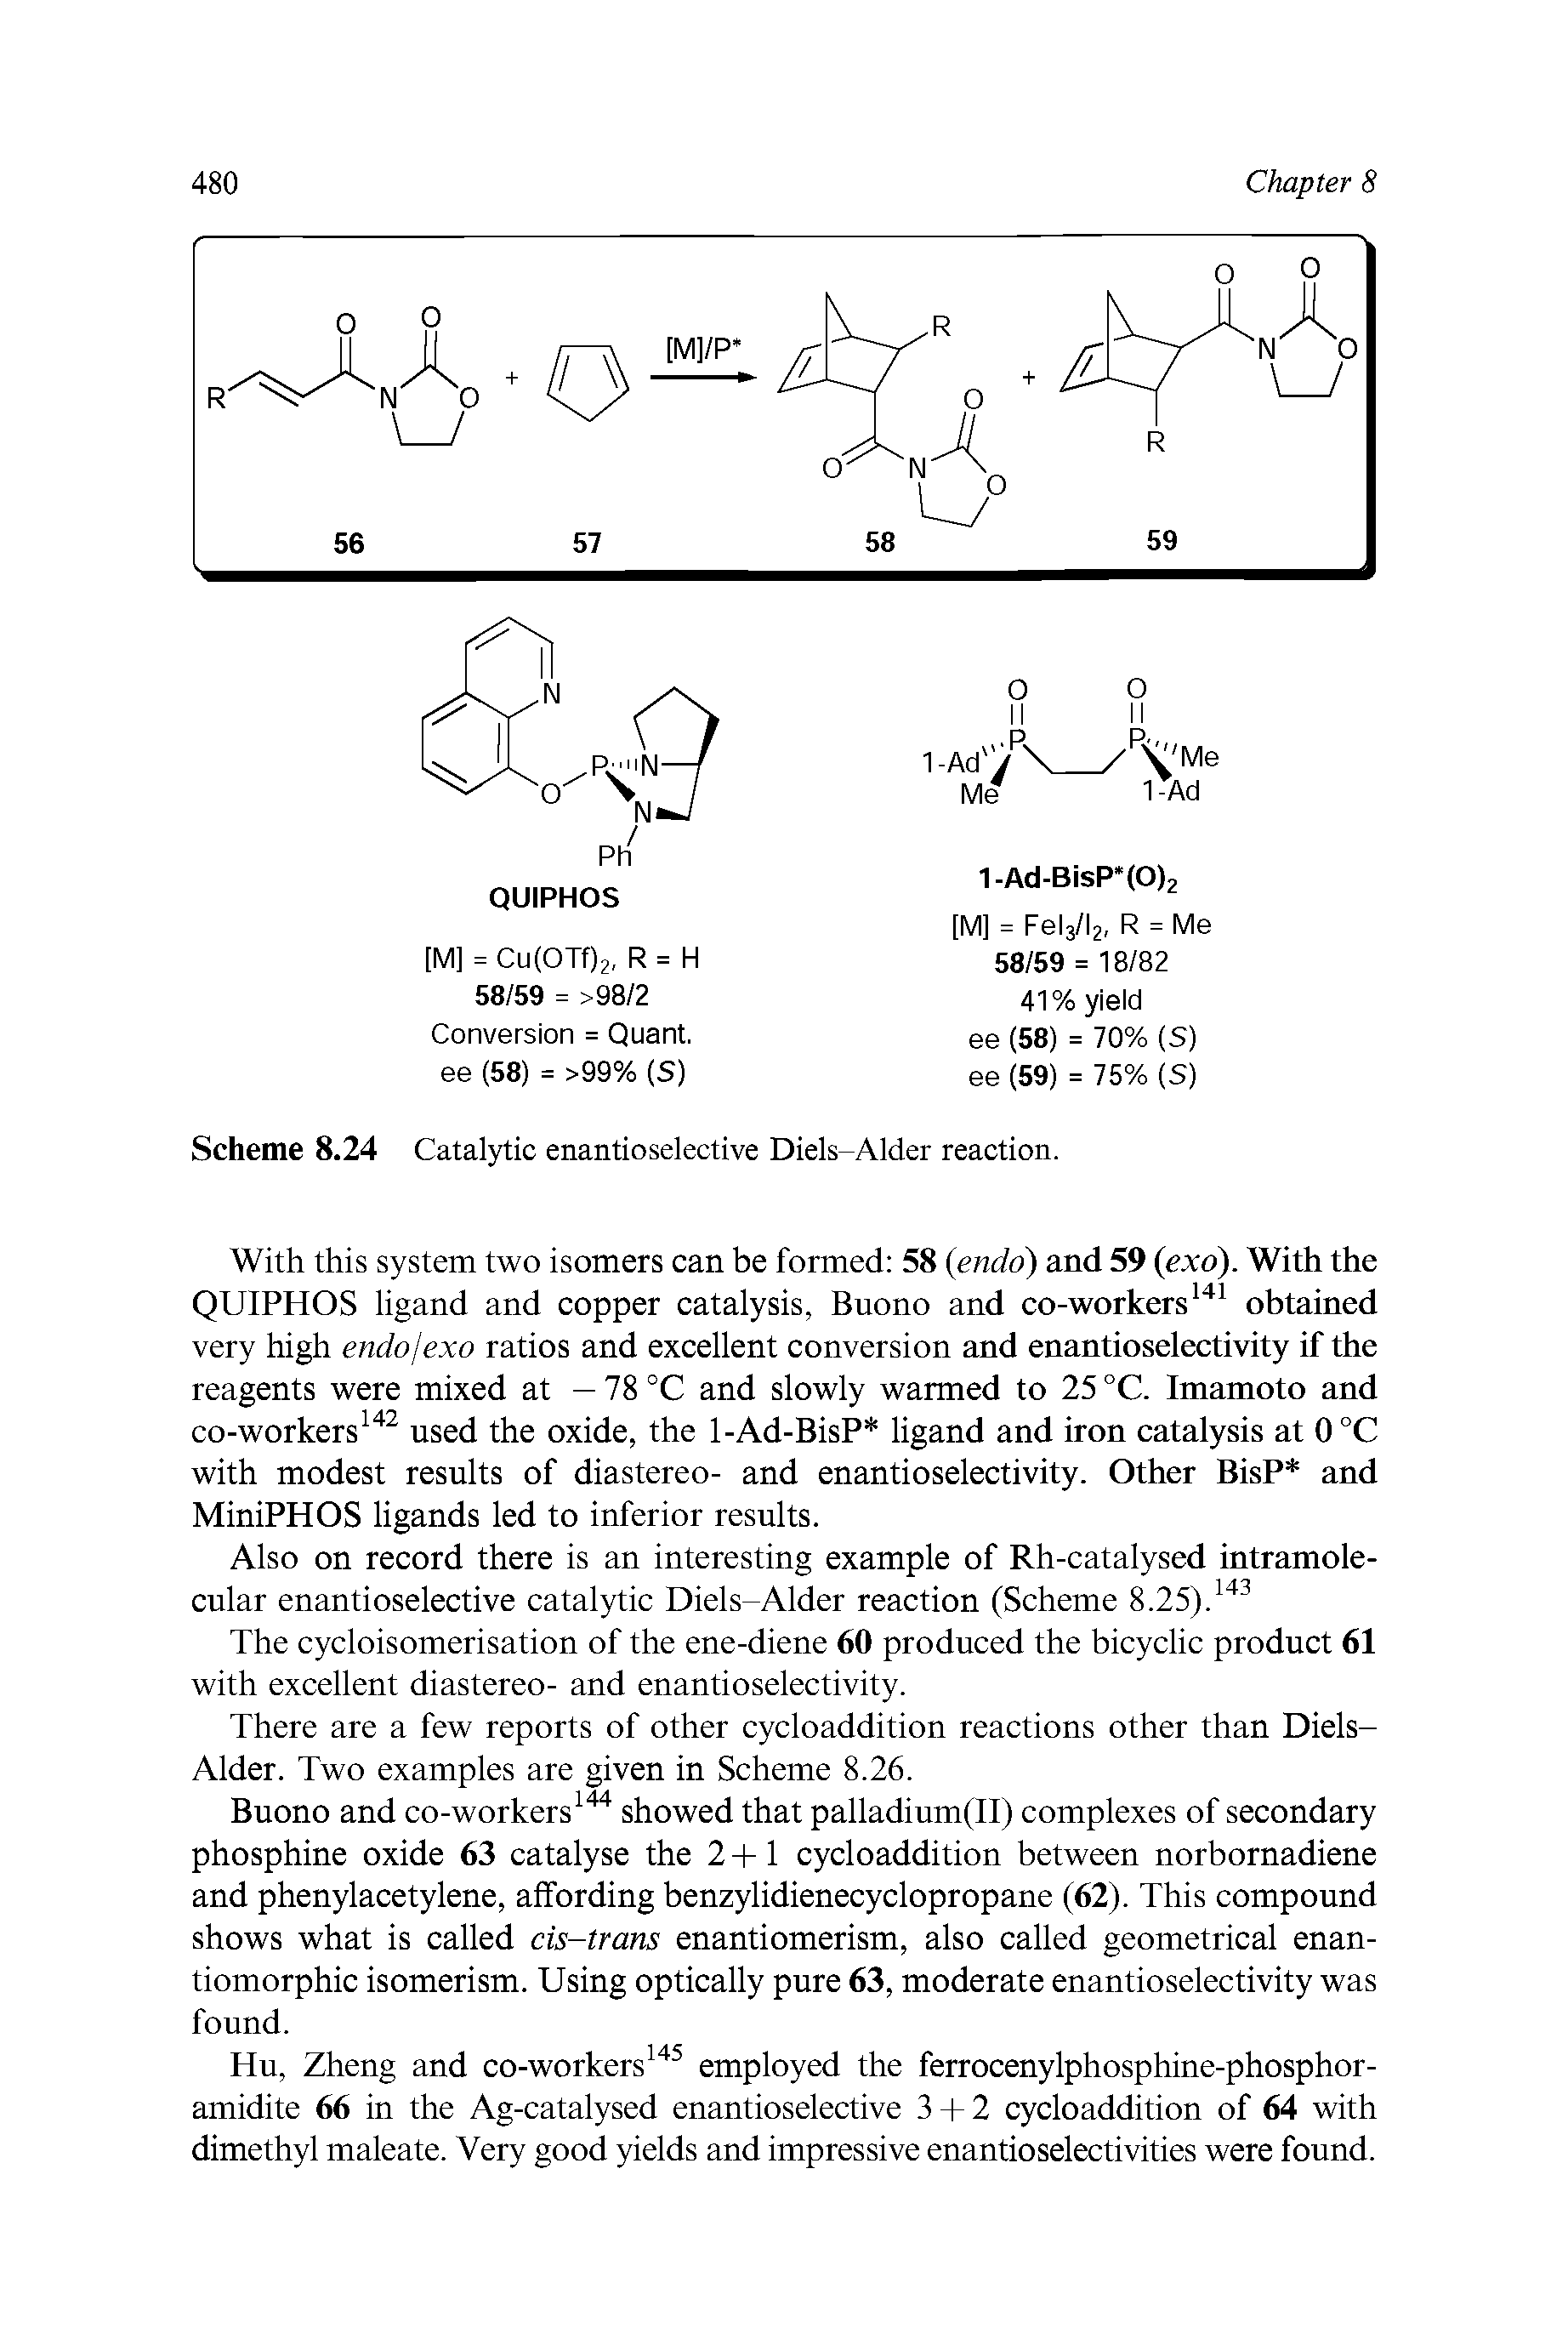 Scheme 8.24 Catalytic enantioselective Diels-Alder reaction.